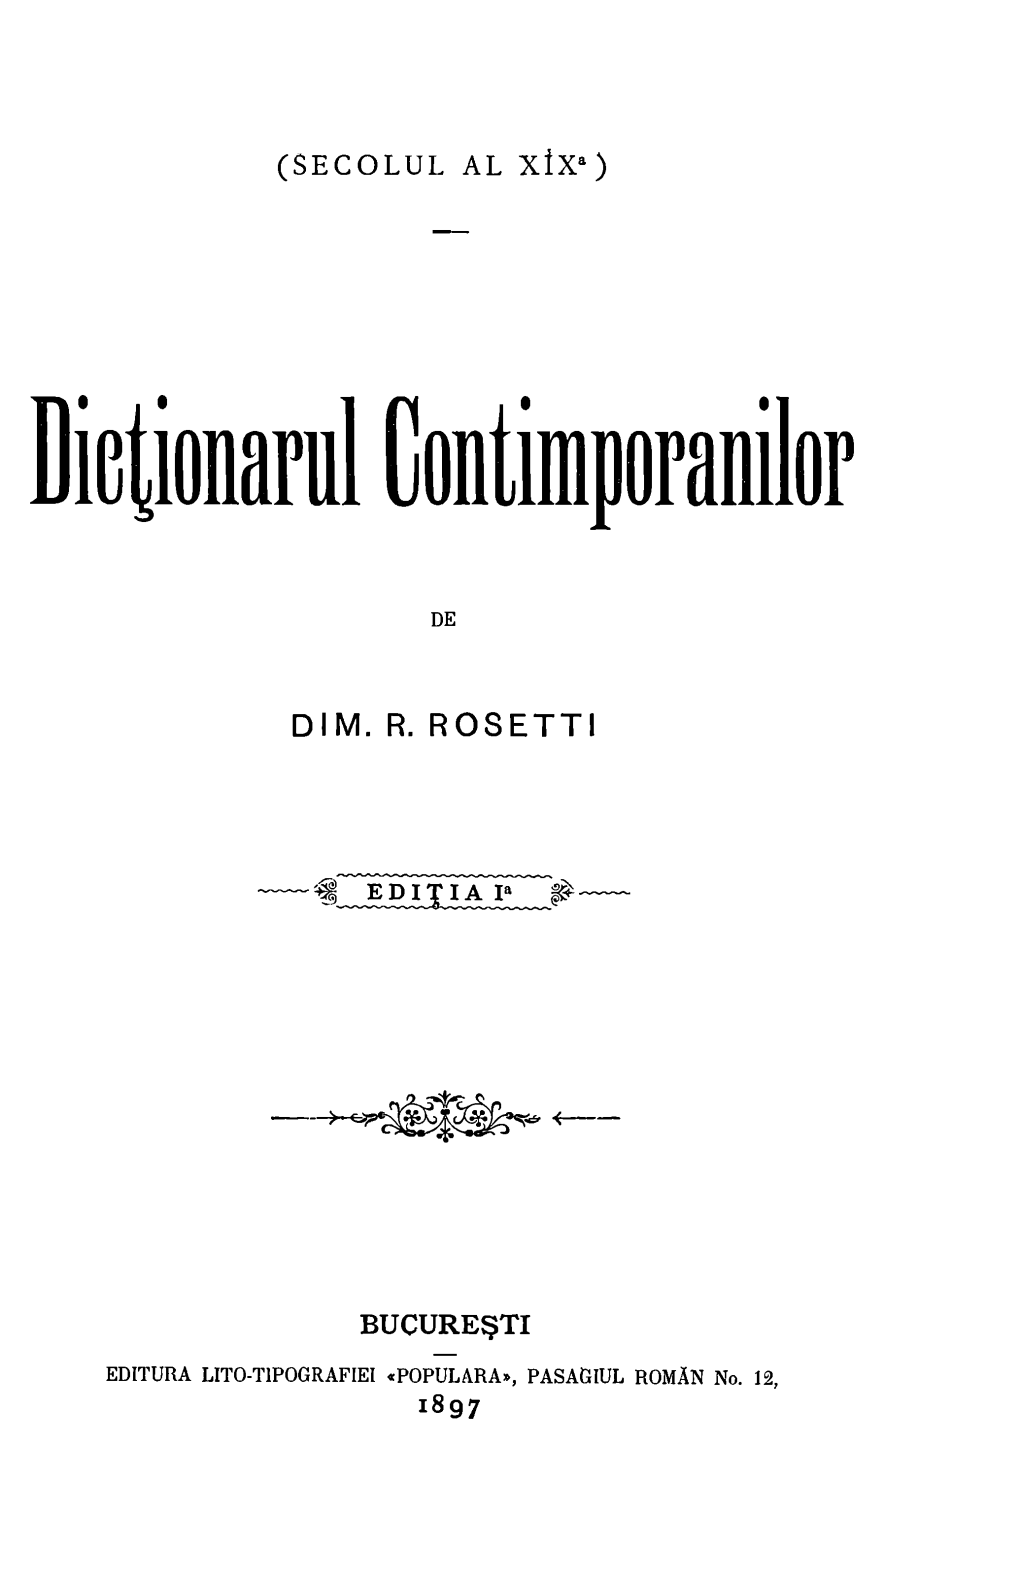 Dictiollar111 Contimporallilor